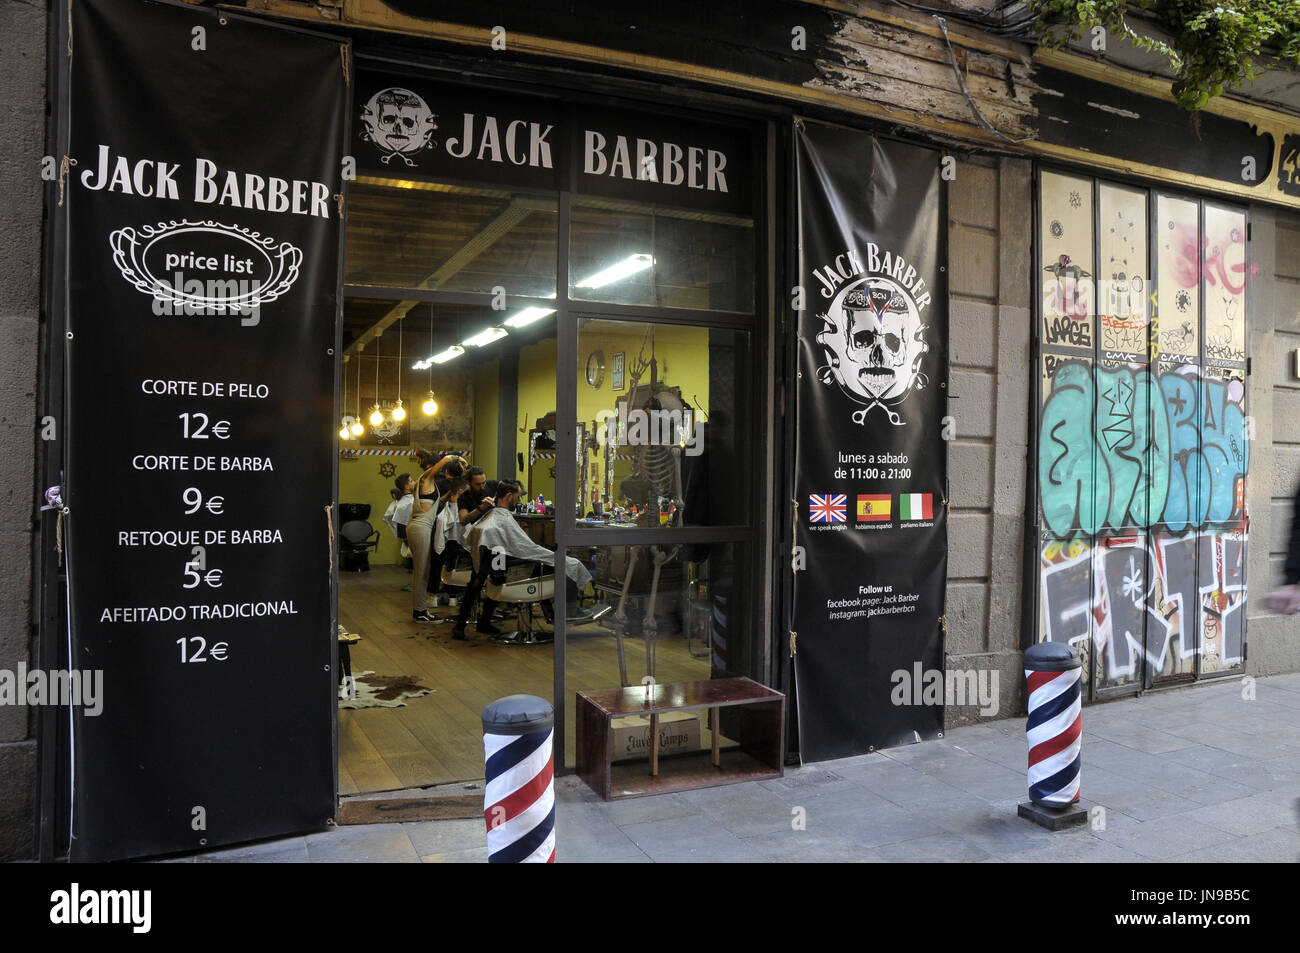 Friseursalon Jack Barber im Bezirk El Raval. Barcelona. Spanien. Foto: Rosmi Duaso Stockfoto